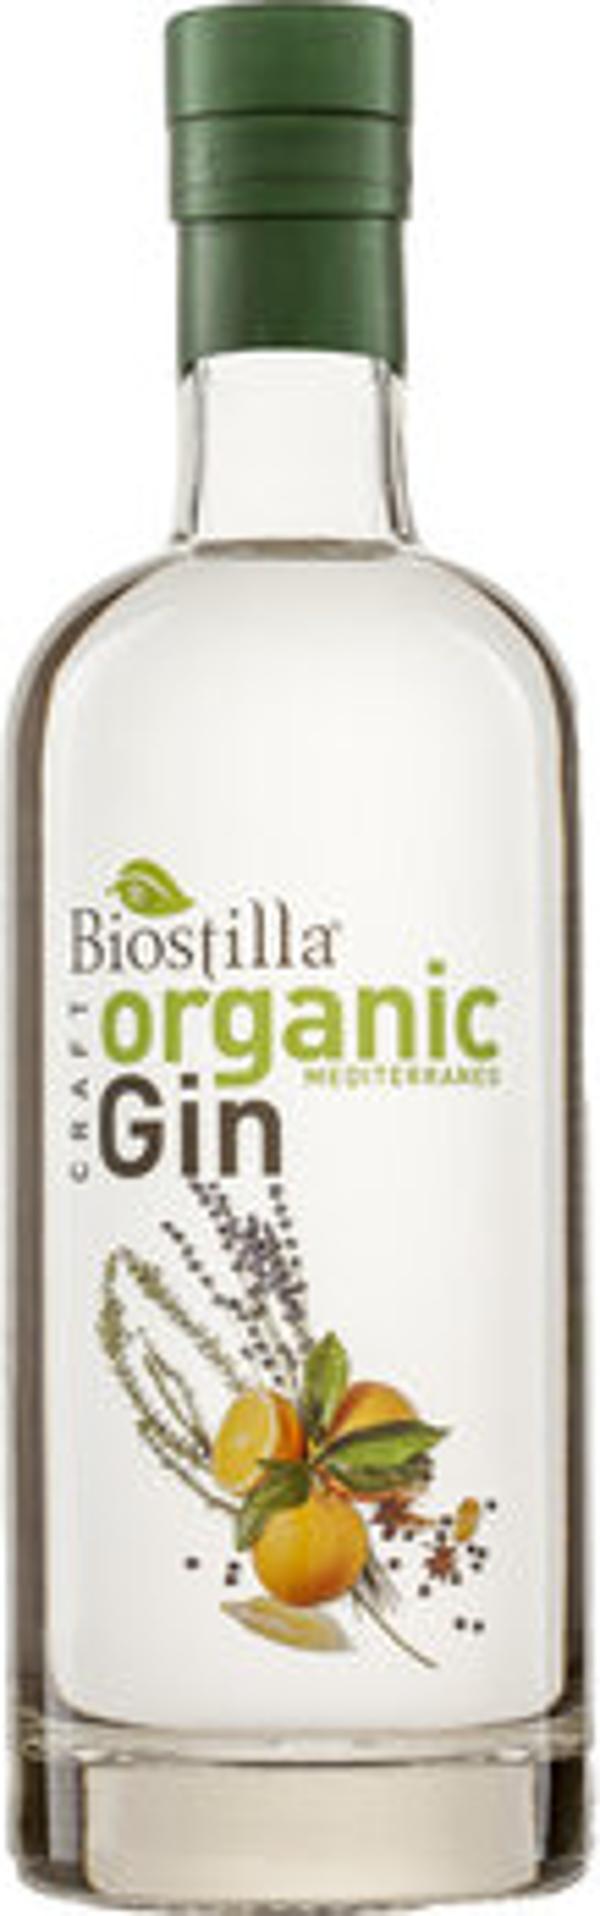 Produktfoto zu Biostilla Organic Gin Mediterraneo